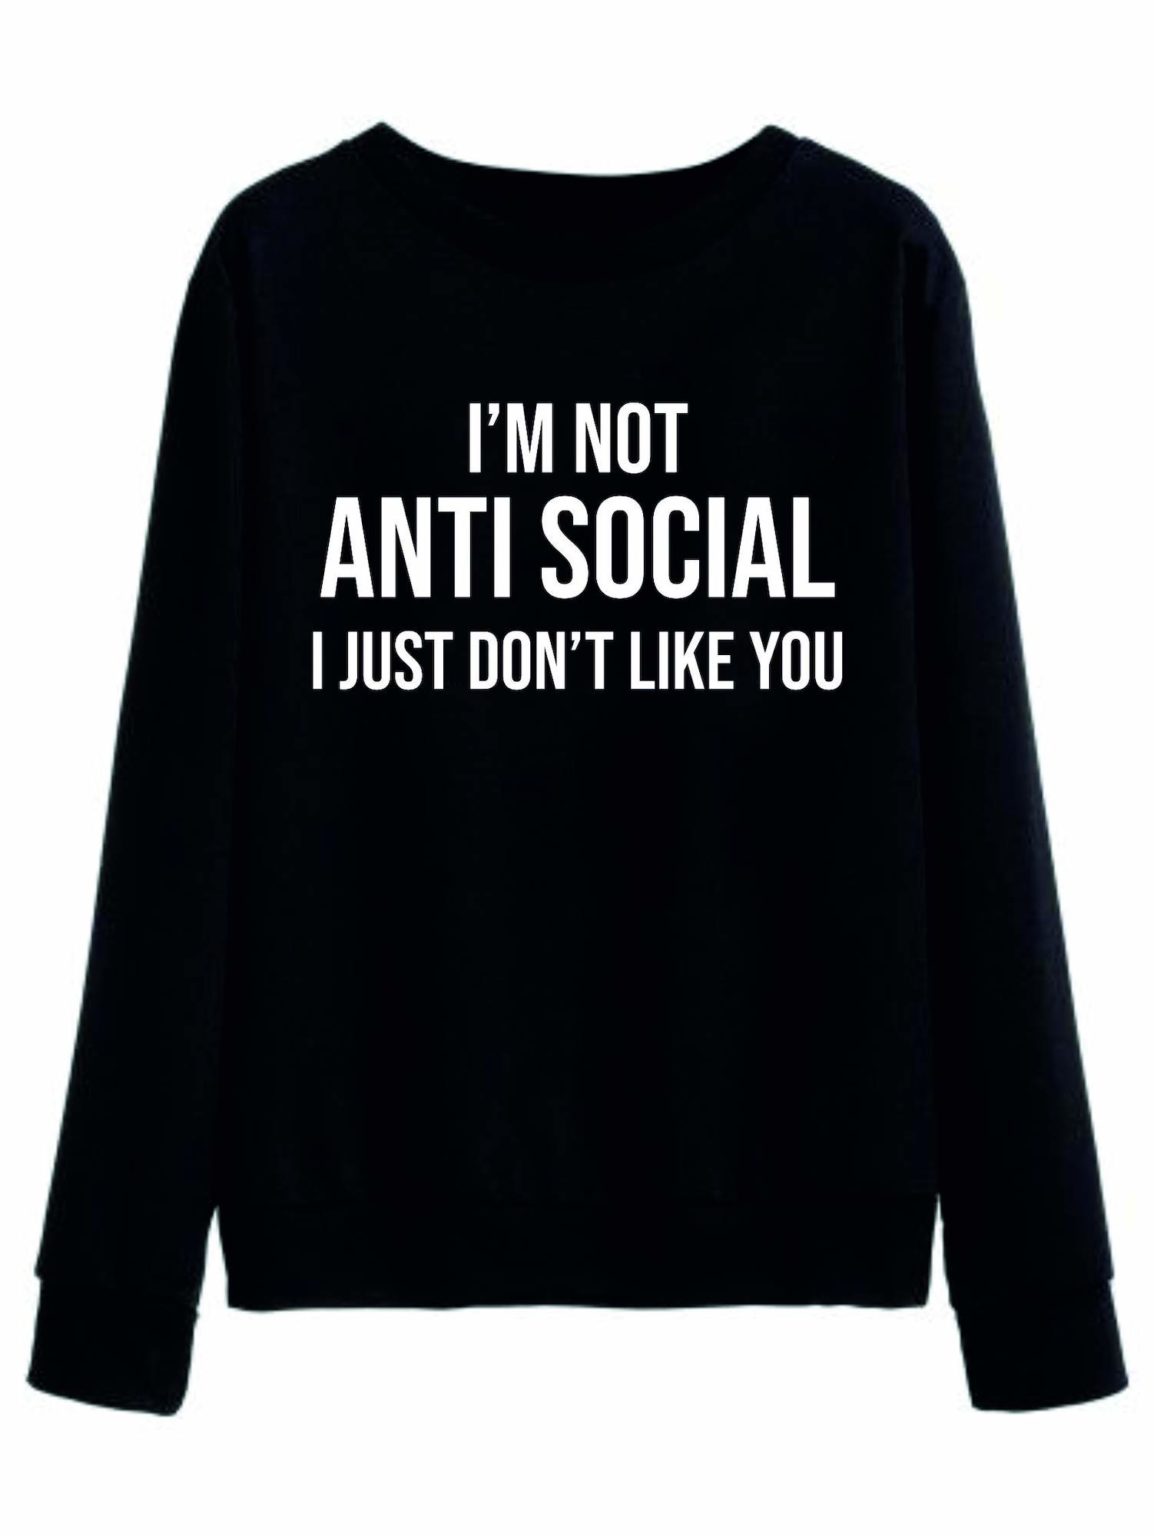 Дамска Блуза I"m not anti social*black